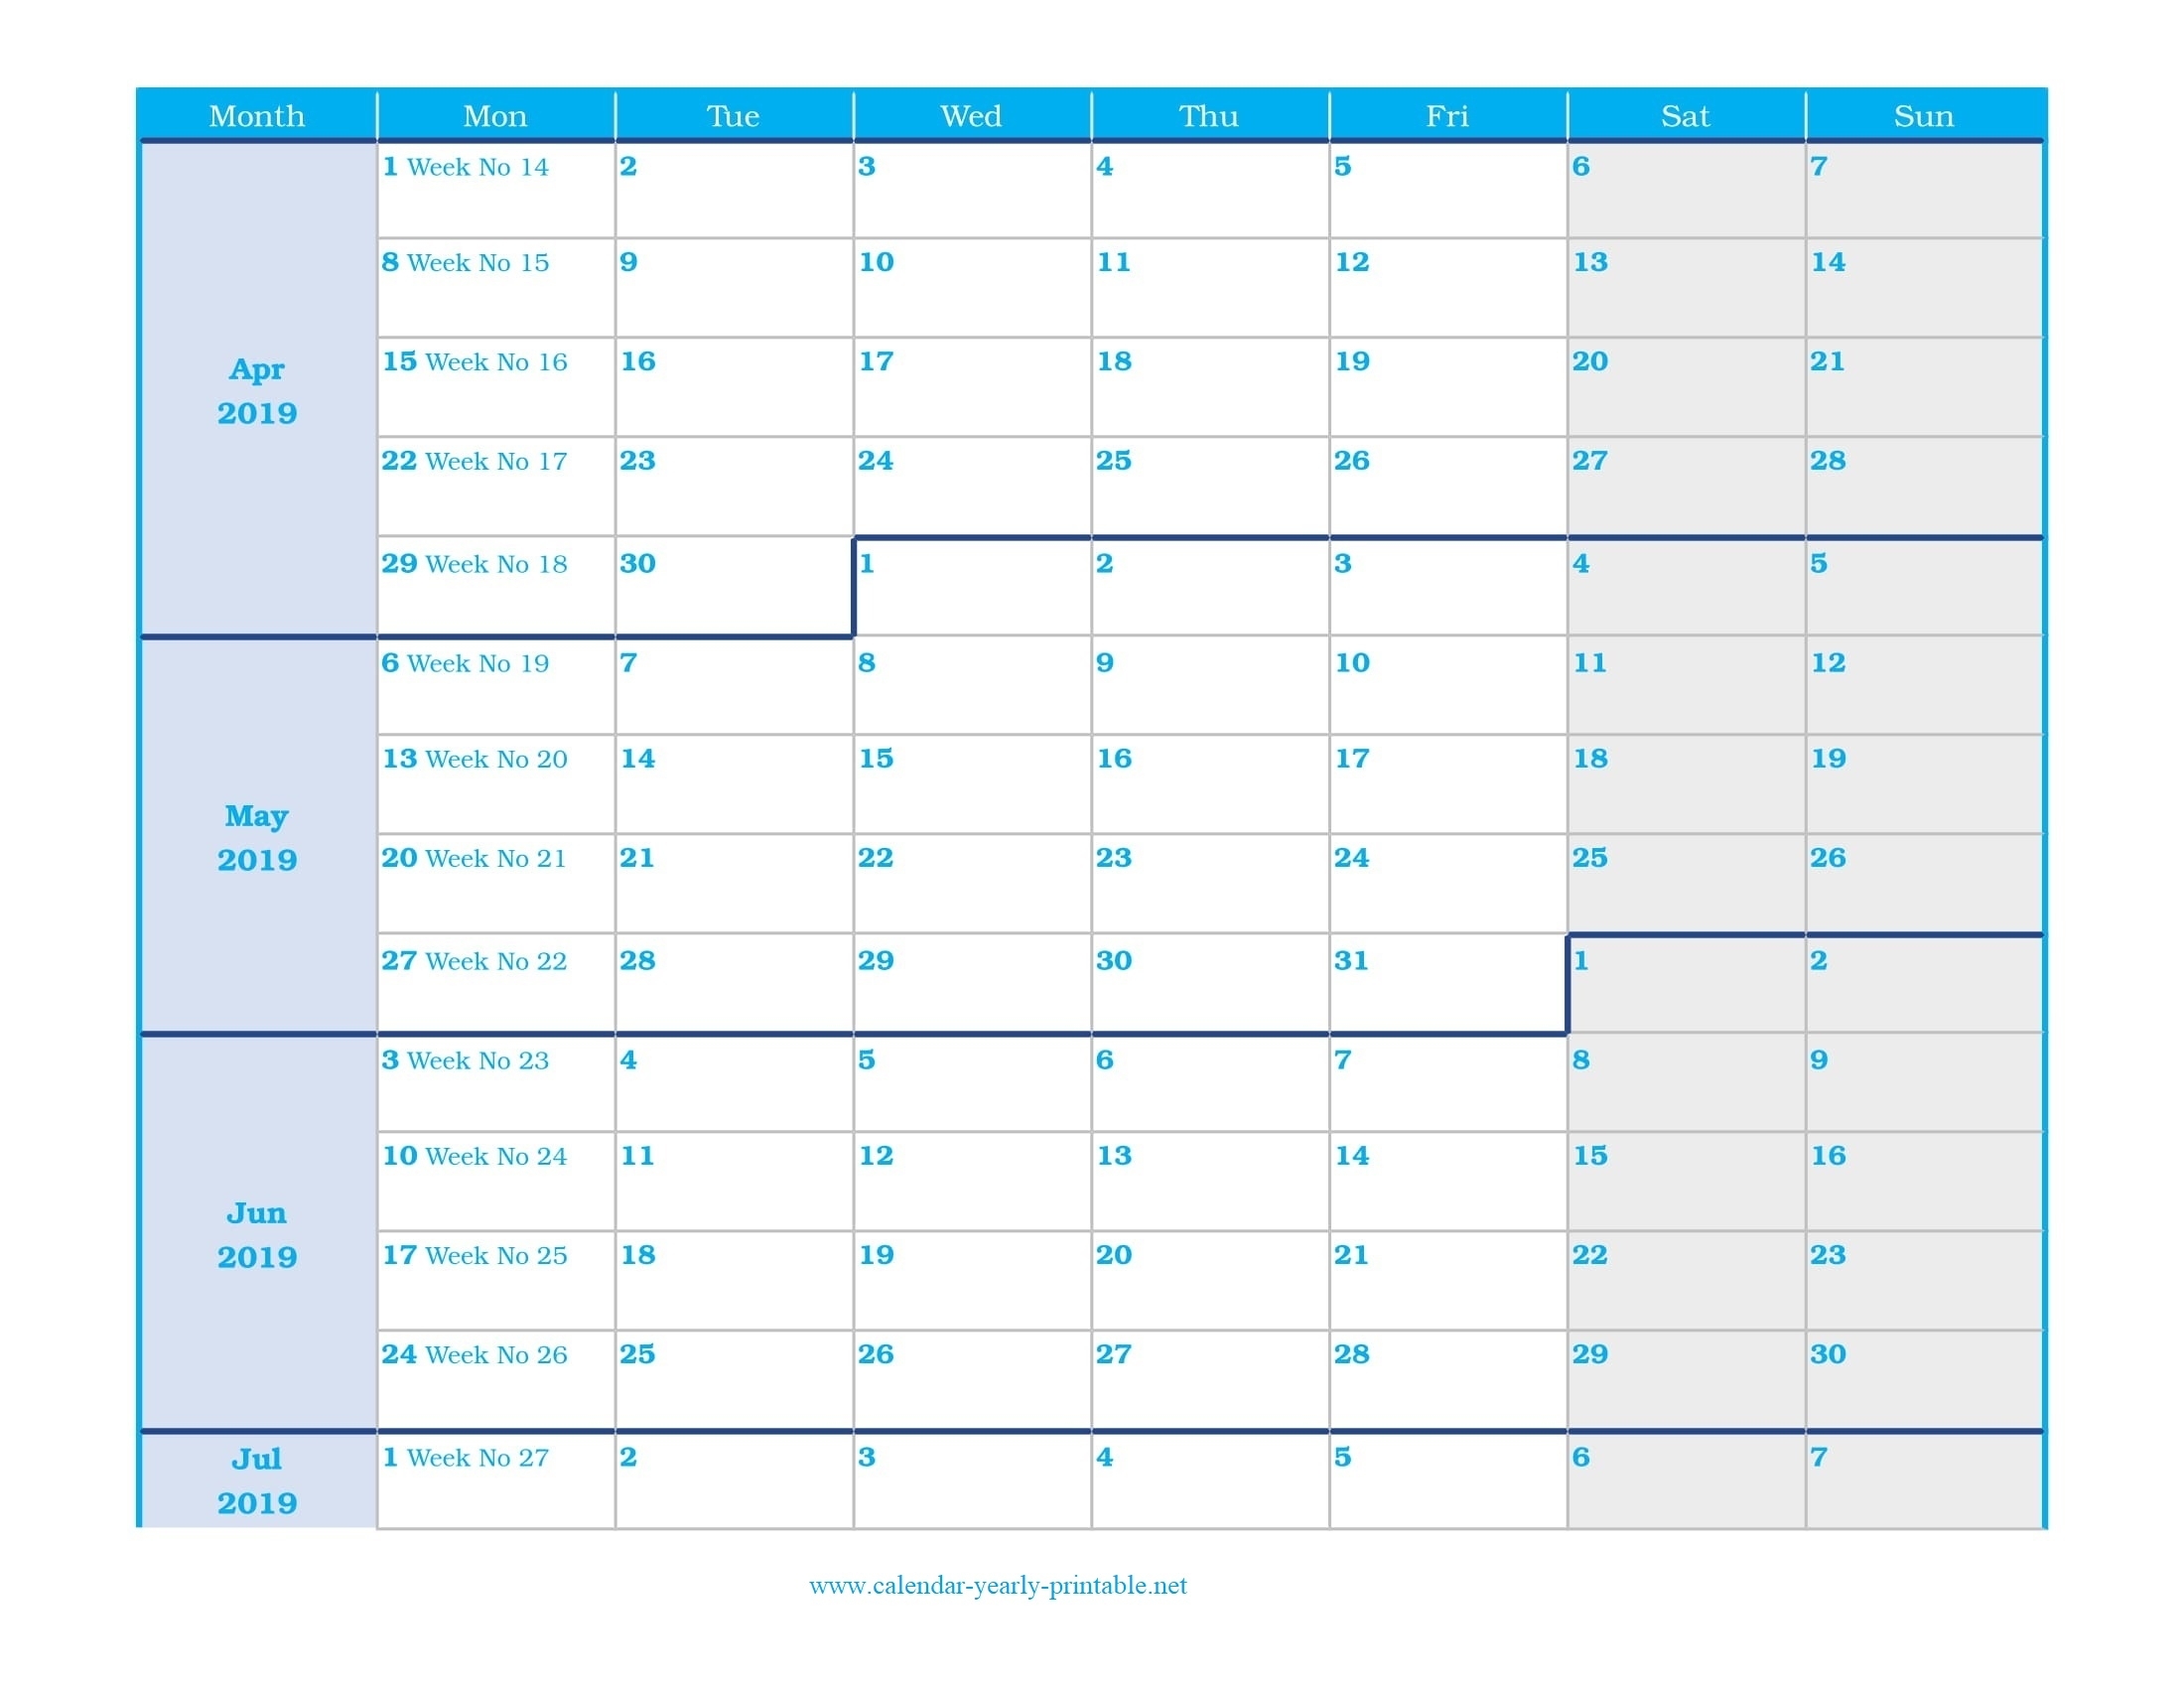 9 Plus Free Weekly Calendar - Calendar Yearly Printable within Calendar Weeks Printable No Datwes